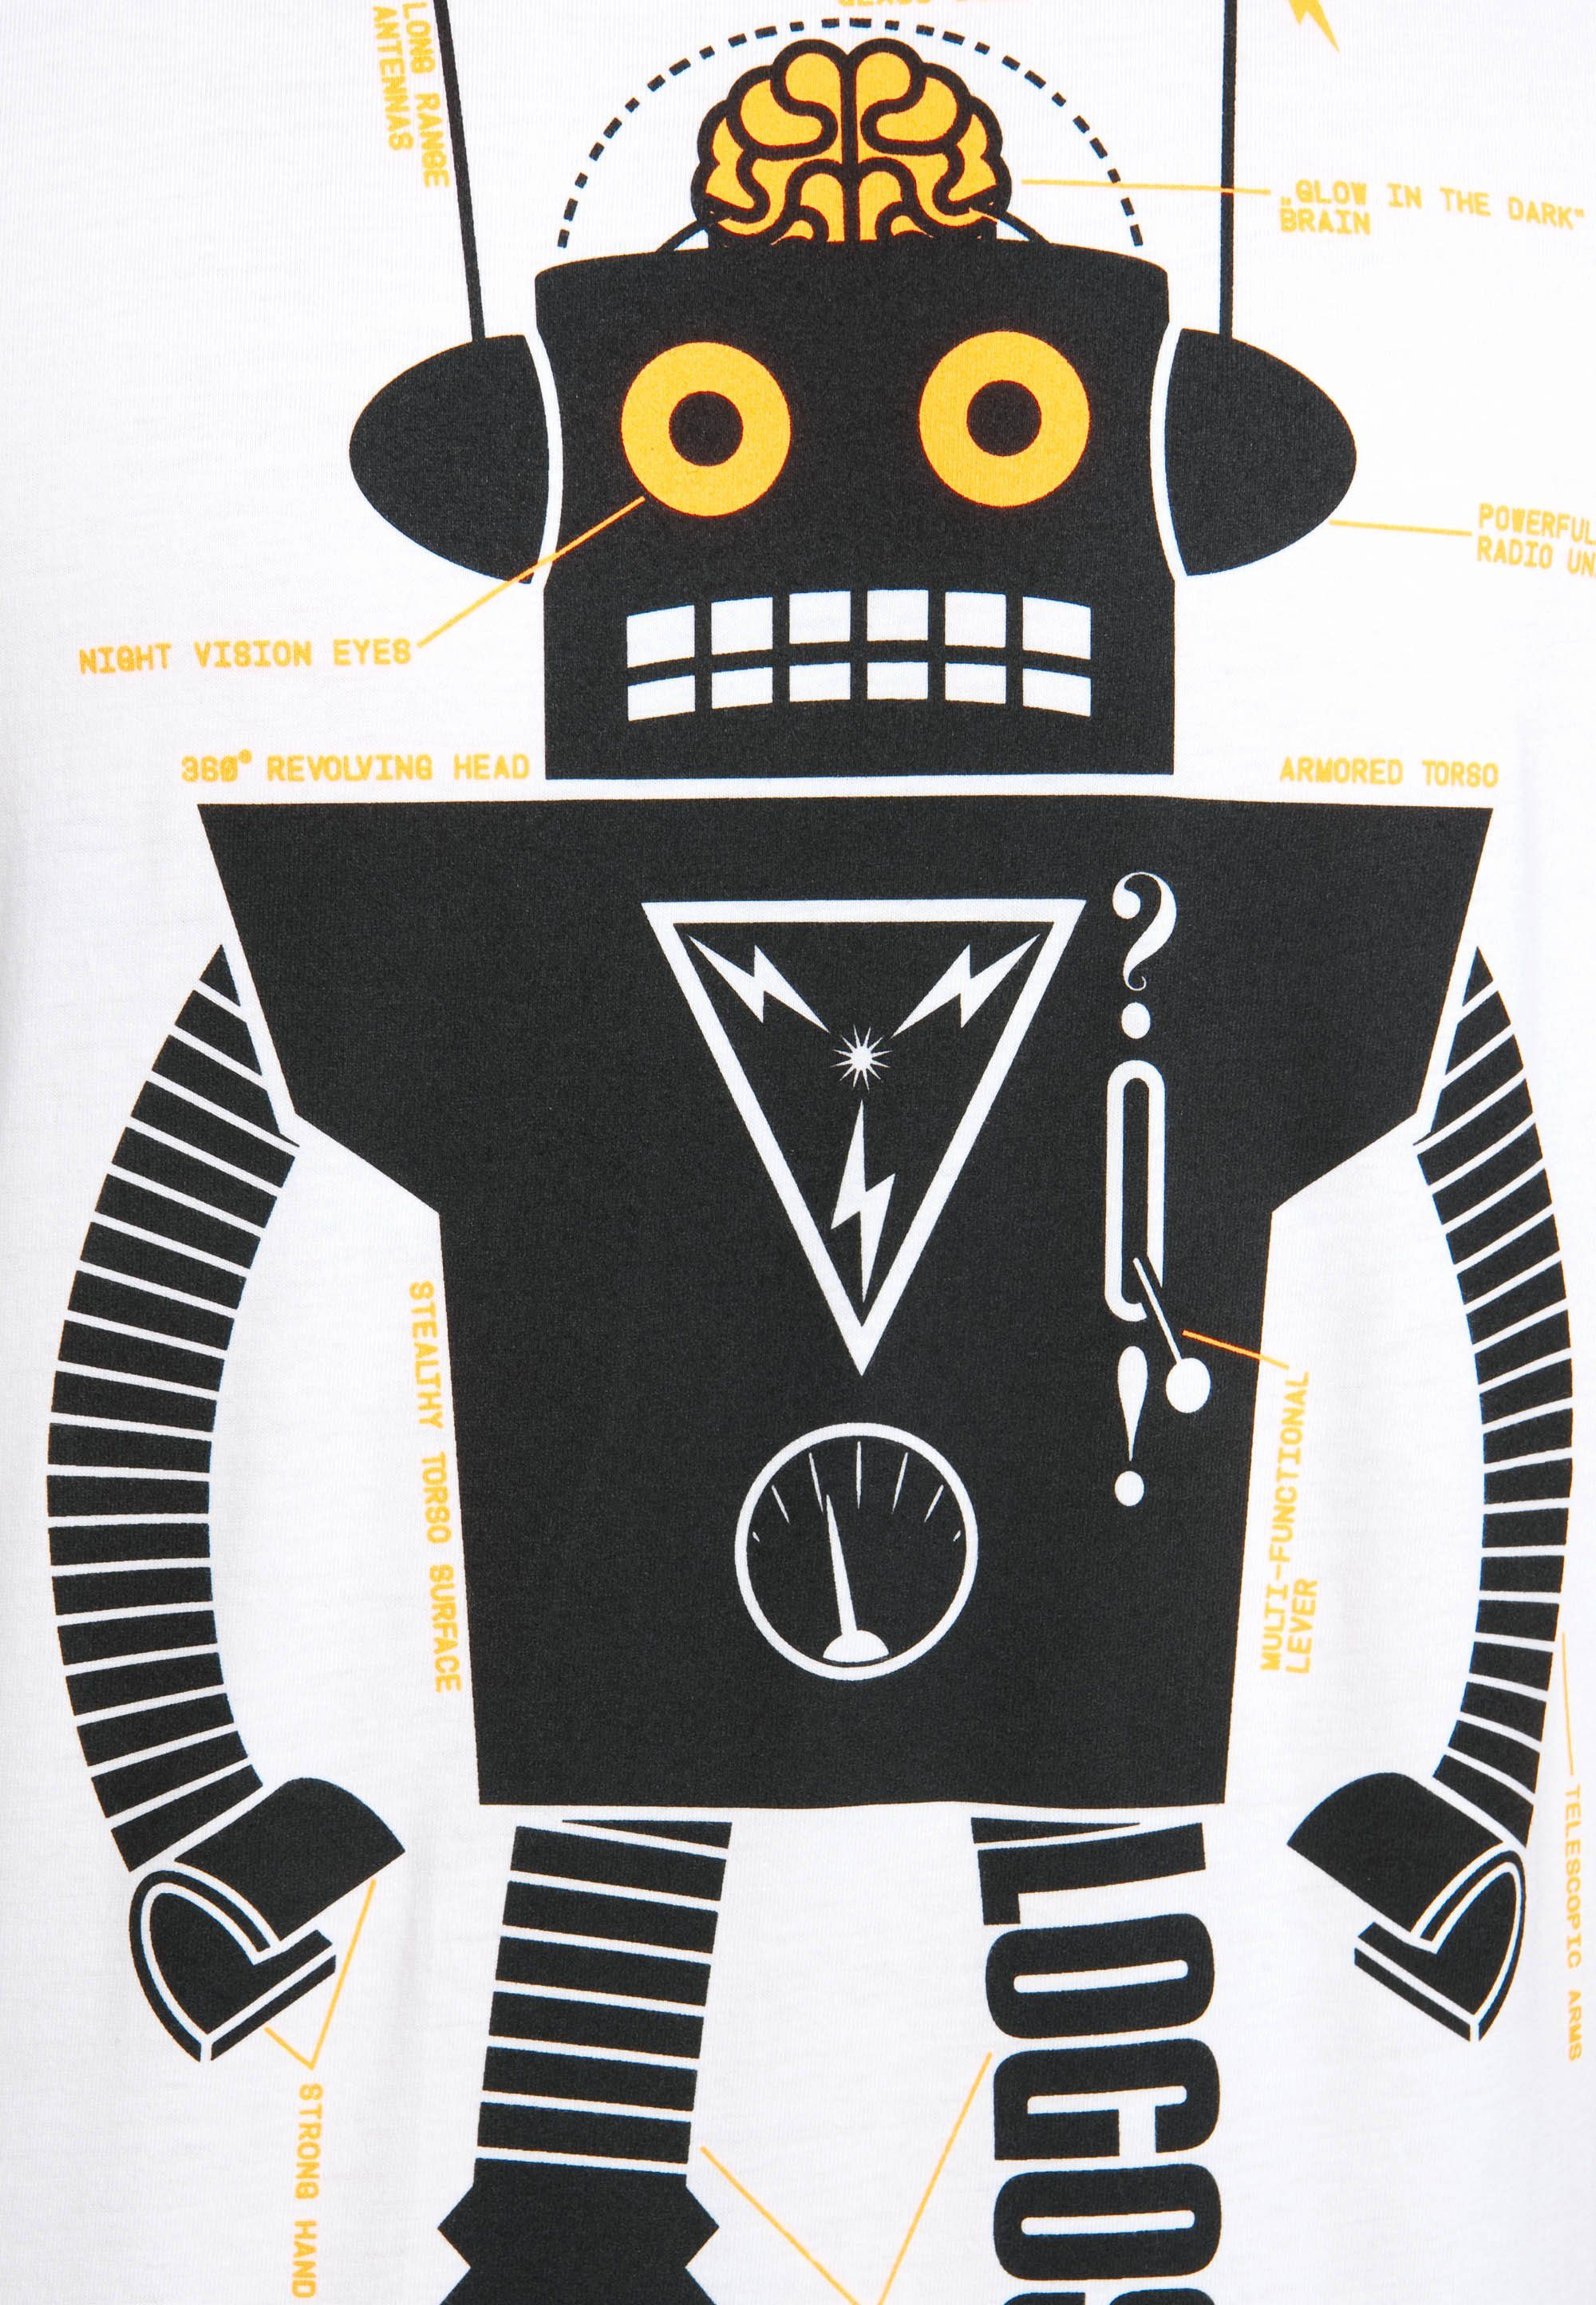 mit LOGOSHIRT Roboter Roboter-Print T-Shirt Logo Logoshirt